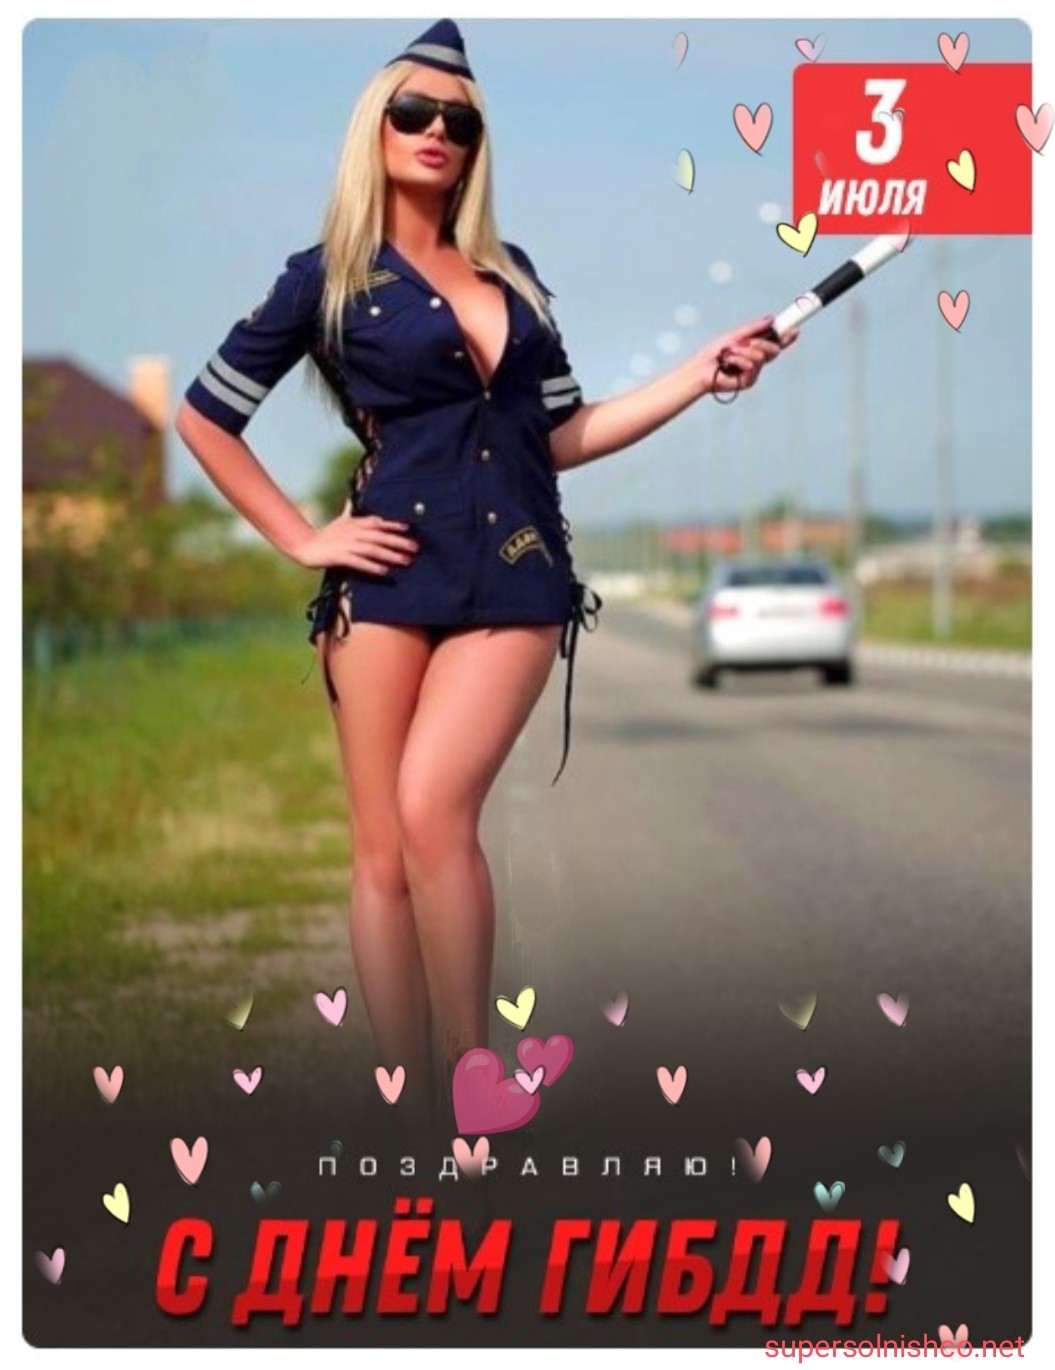 Эротическая открытка: девушка с жезлом на дороге - 3 июля с днём ГИБДД поздравляю